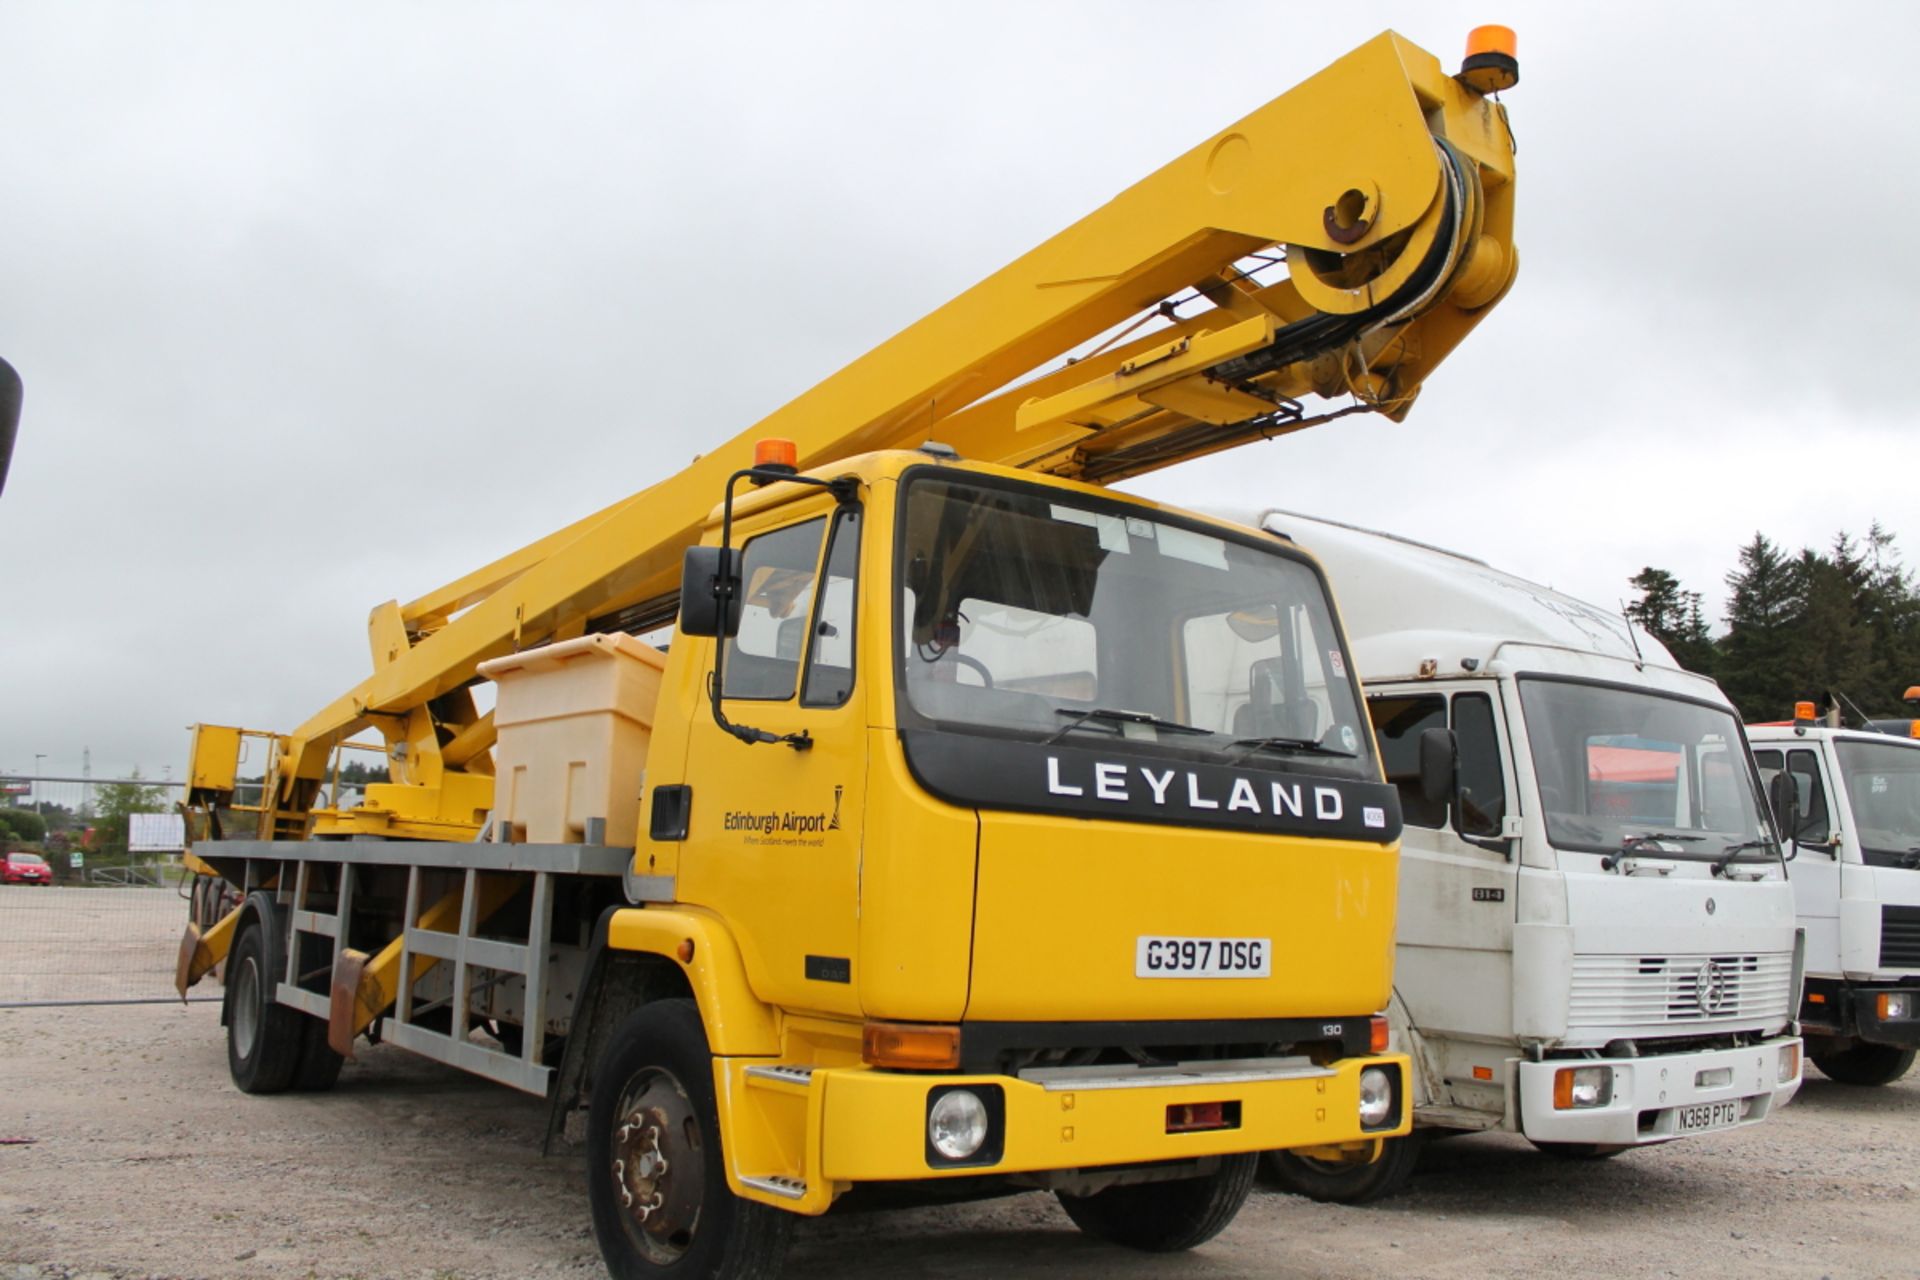 Leyland Freighter 14.13 - 0cc 2 Door Truck